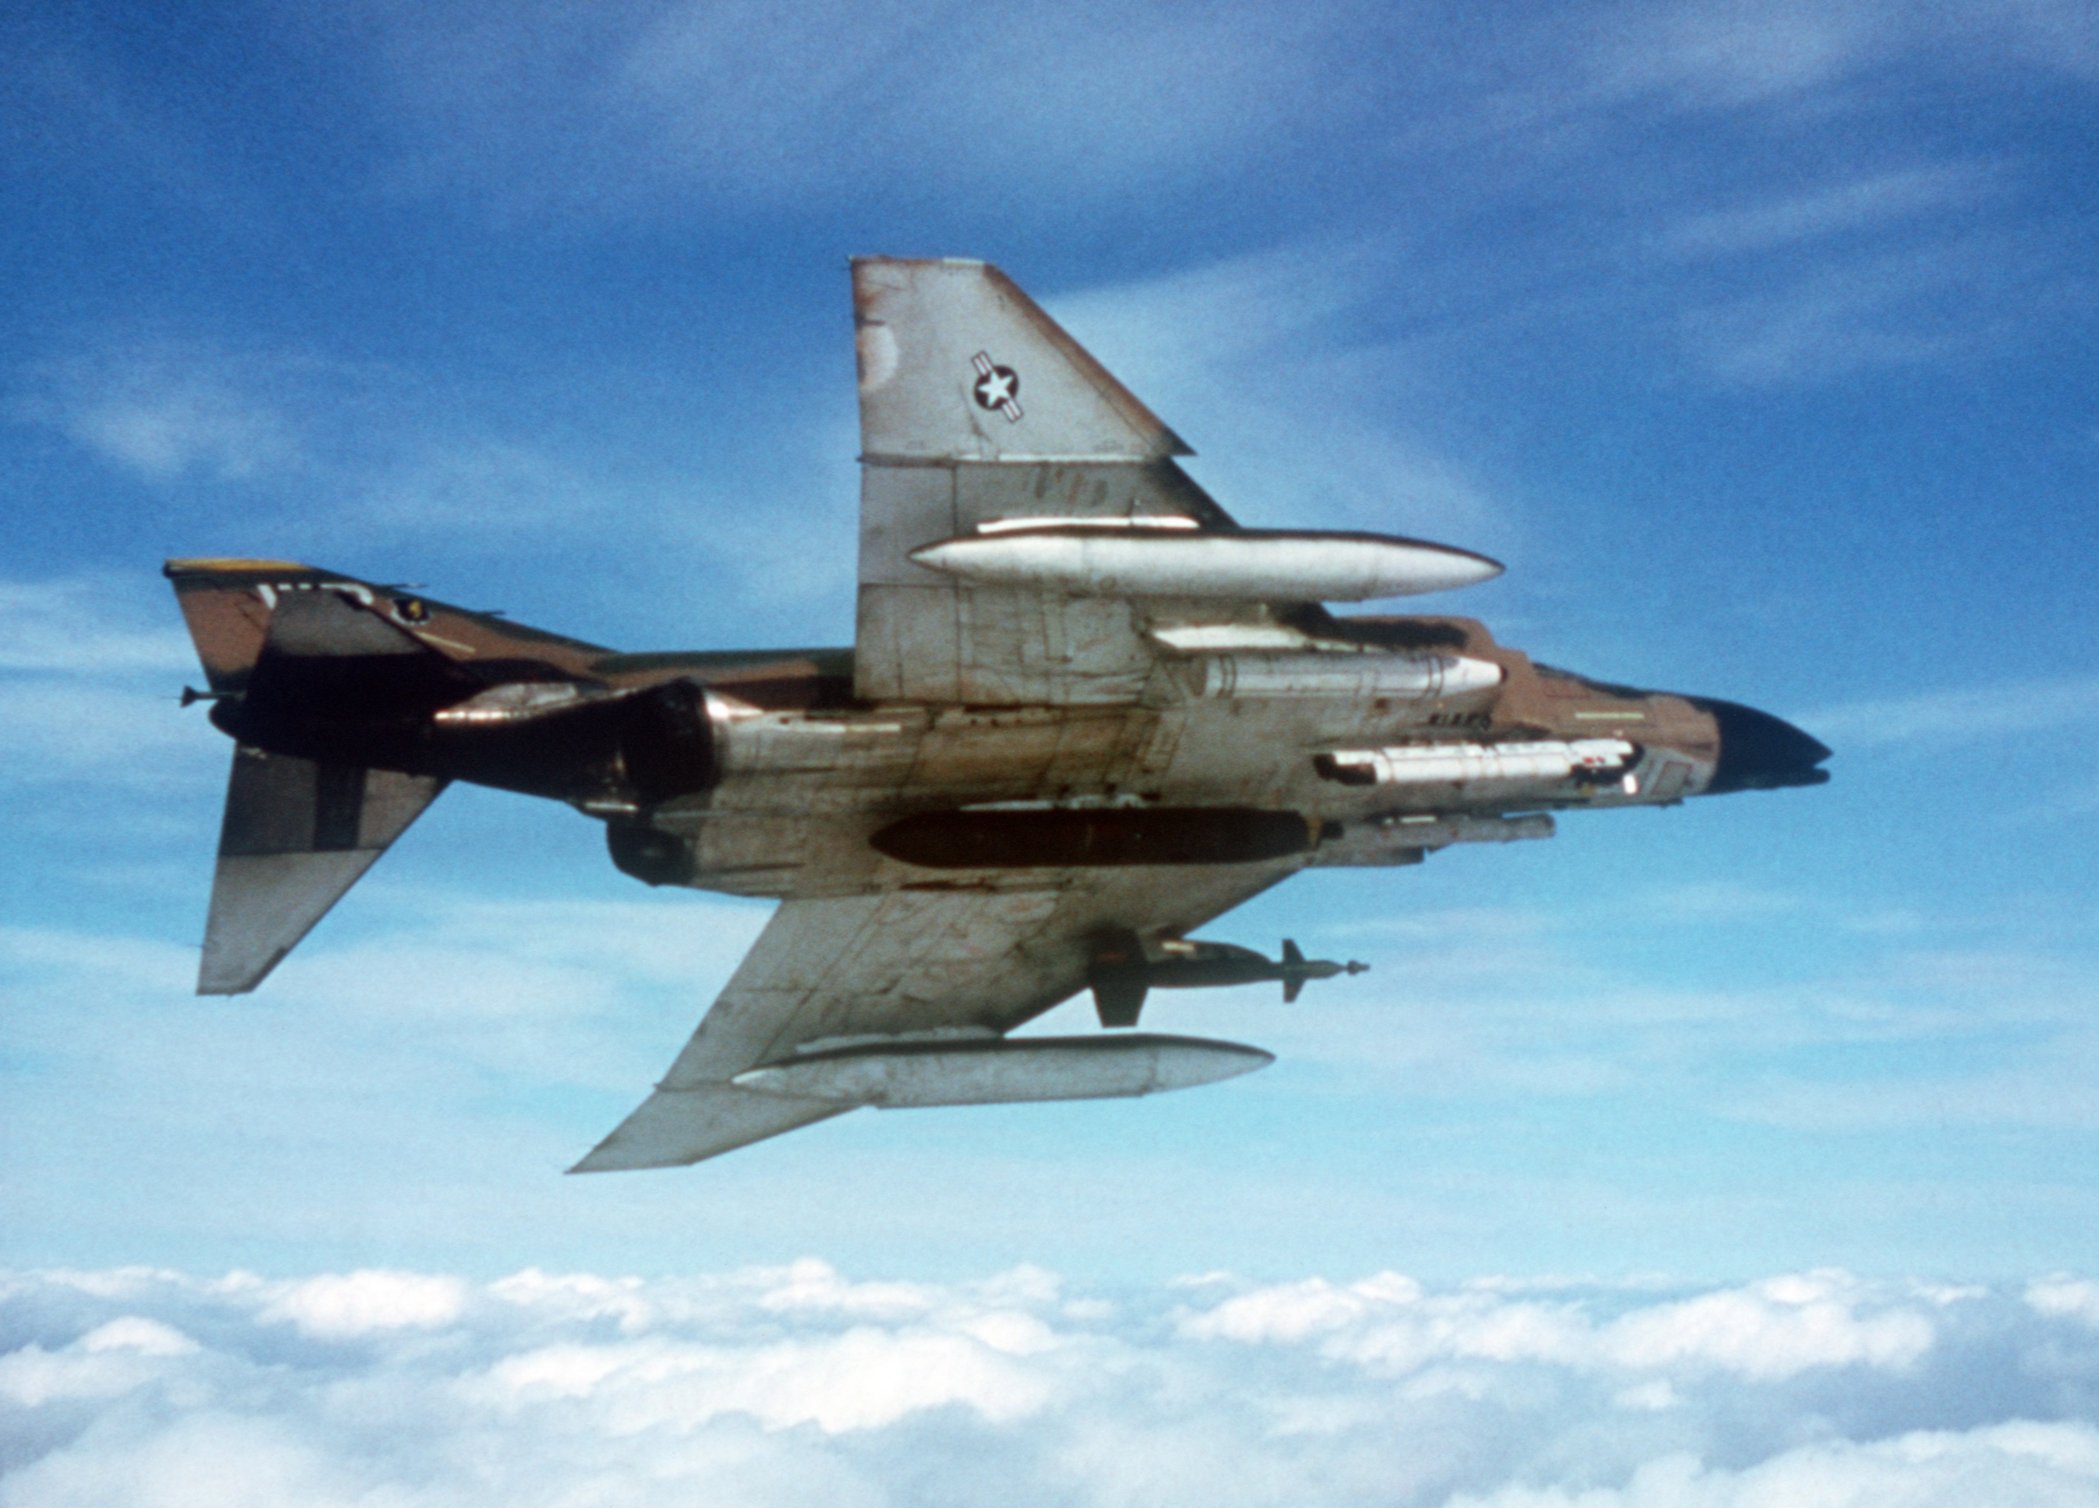 Operation Bolo: The F-4 Phantom Gets Revenge in Vietnam